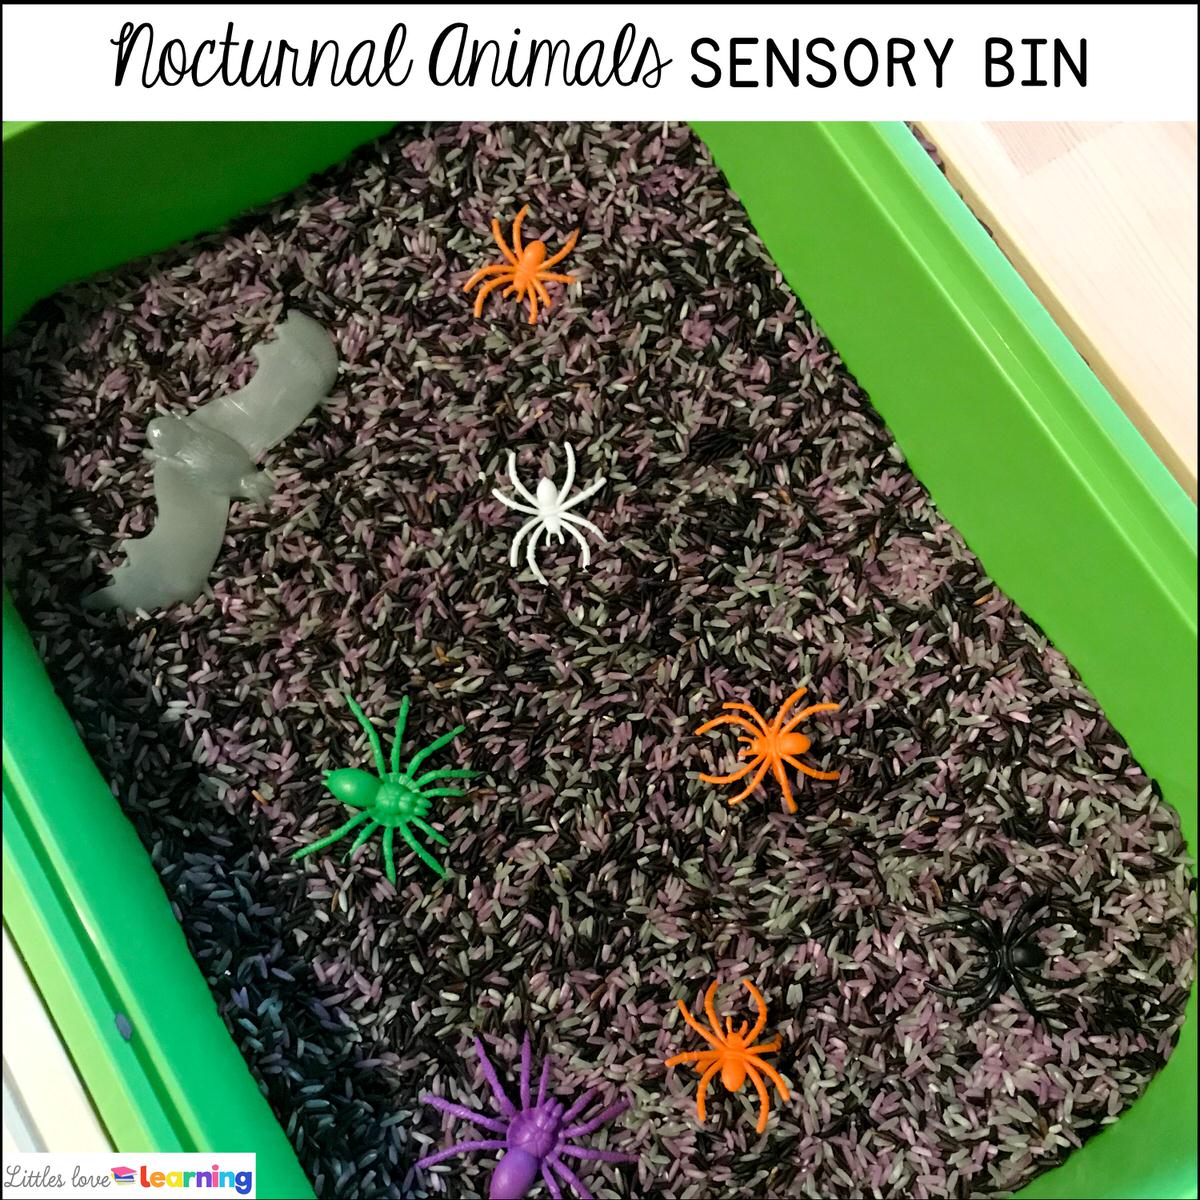 Nocturnal animals sensory bin for preschool, pre-k, and kindergarten 